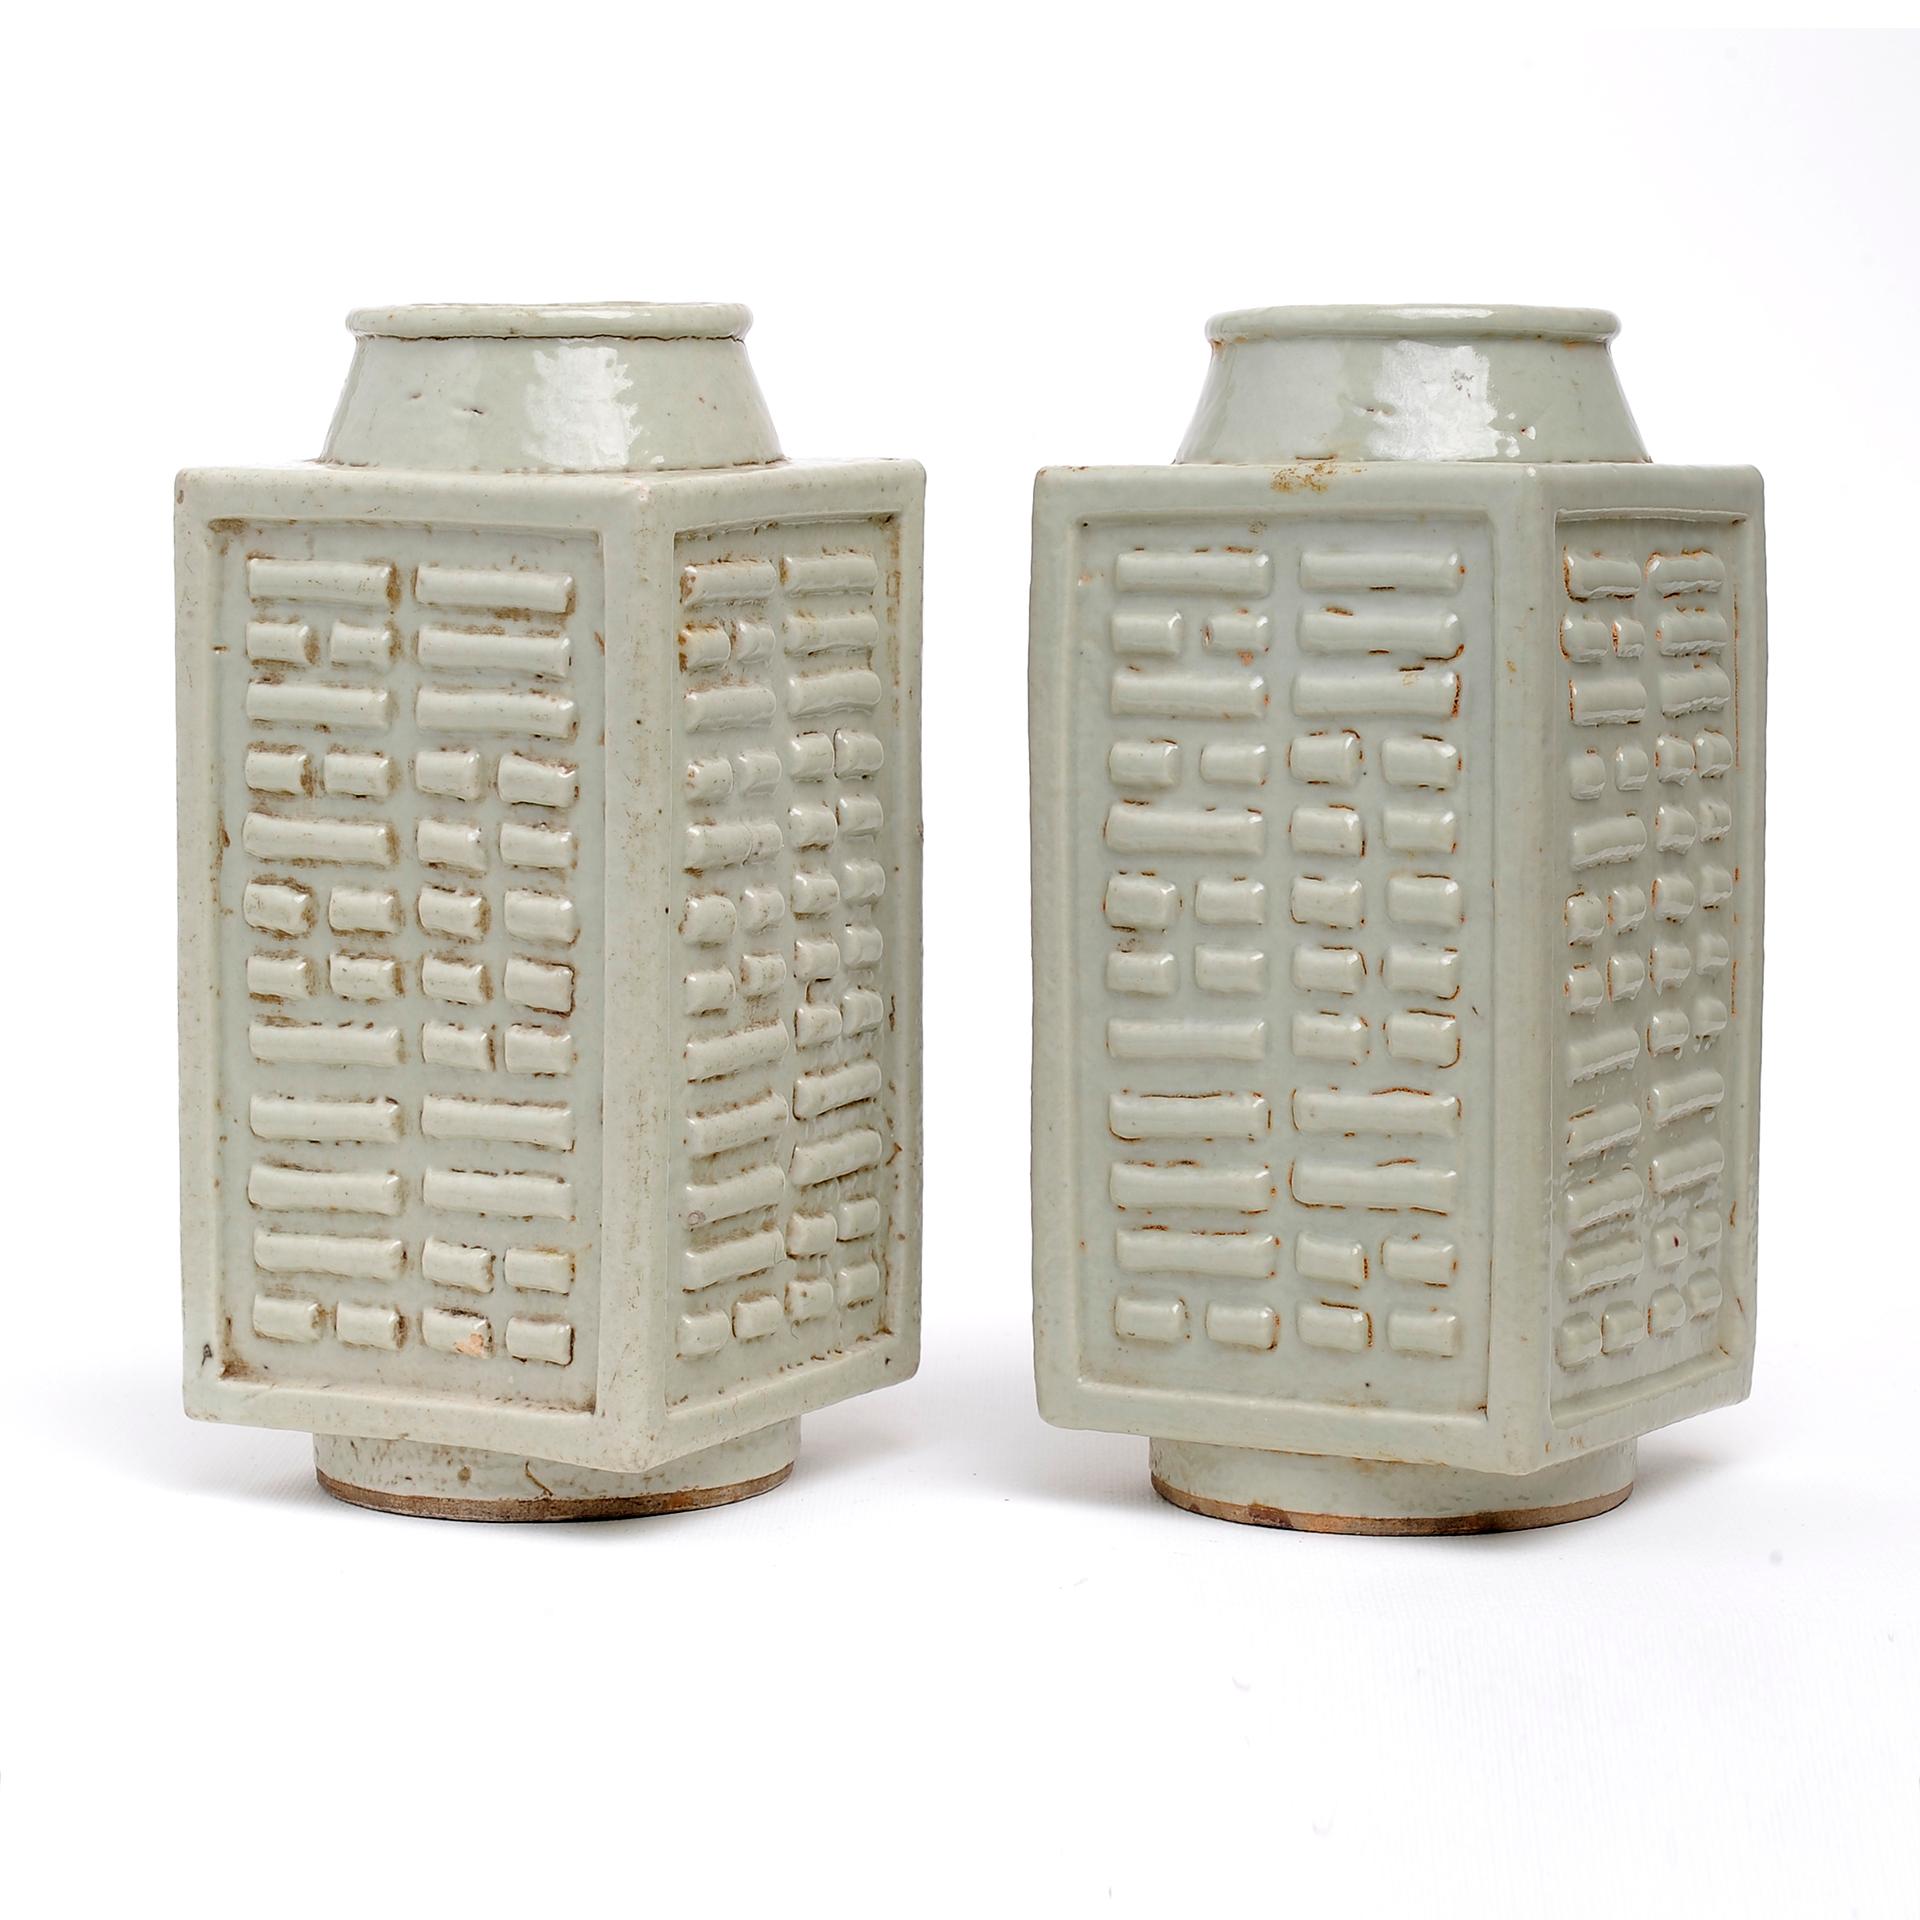 Seltenes Paar antiker quadratischer China-Vasen mit Ching-Zeichen, aus Celadon-Porzellan.
Sie befanden sich 40 Jahre lang in meiner persönlichen Sammlung: Schauen Sie sich all die anderen alten chinesischen Keramiken an, die ich in diesen Tagen